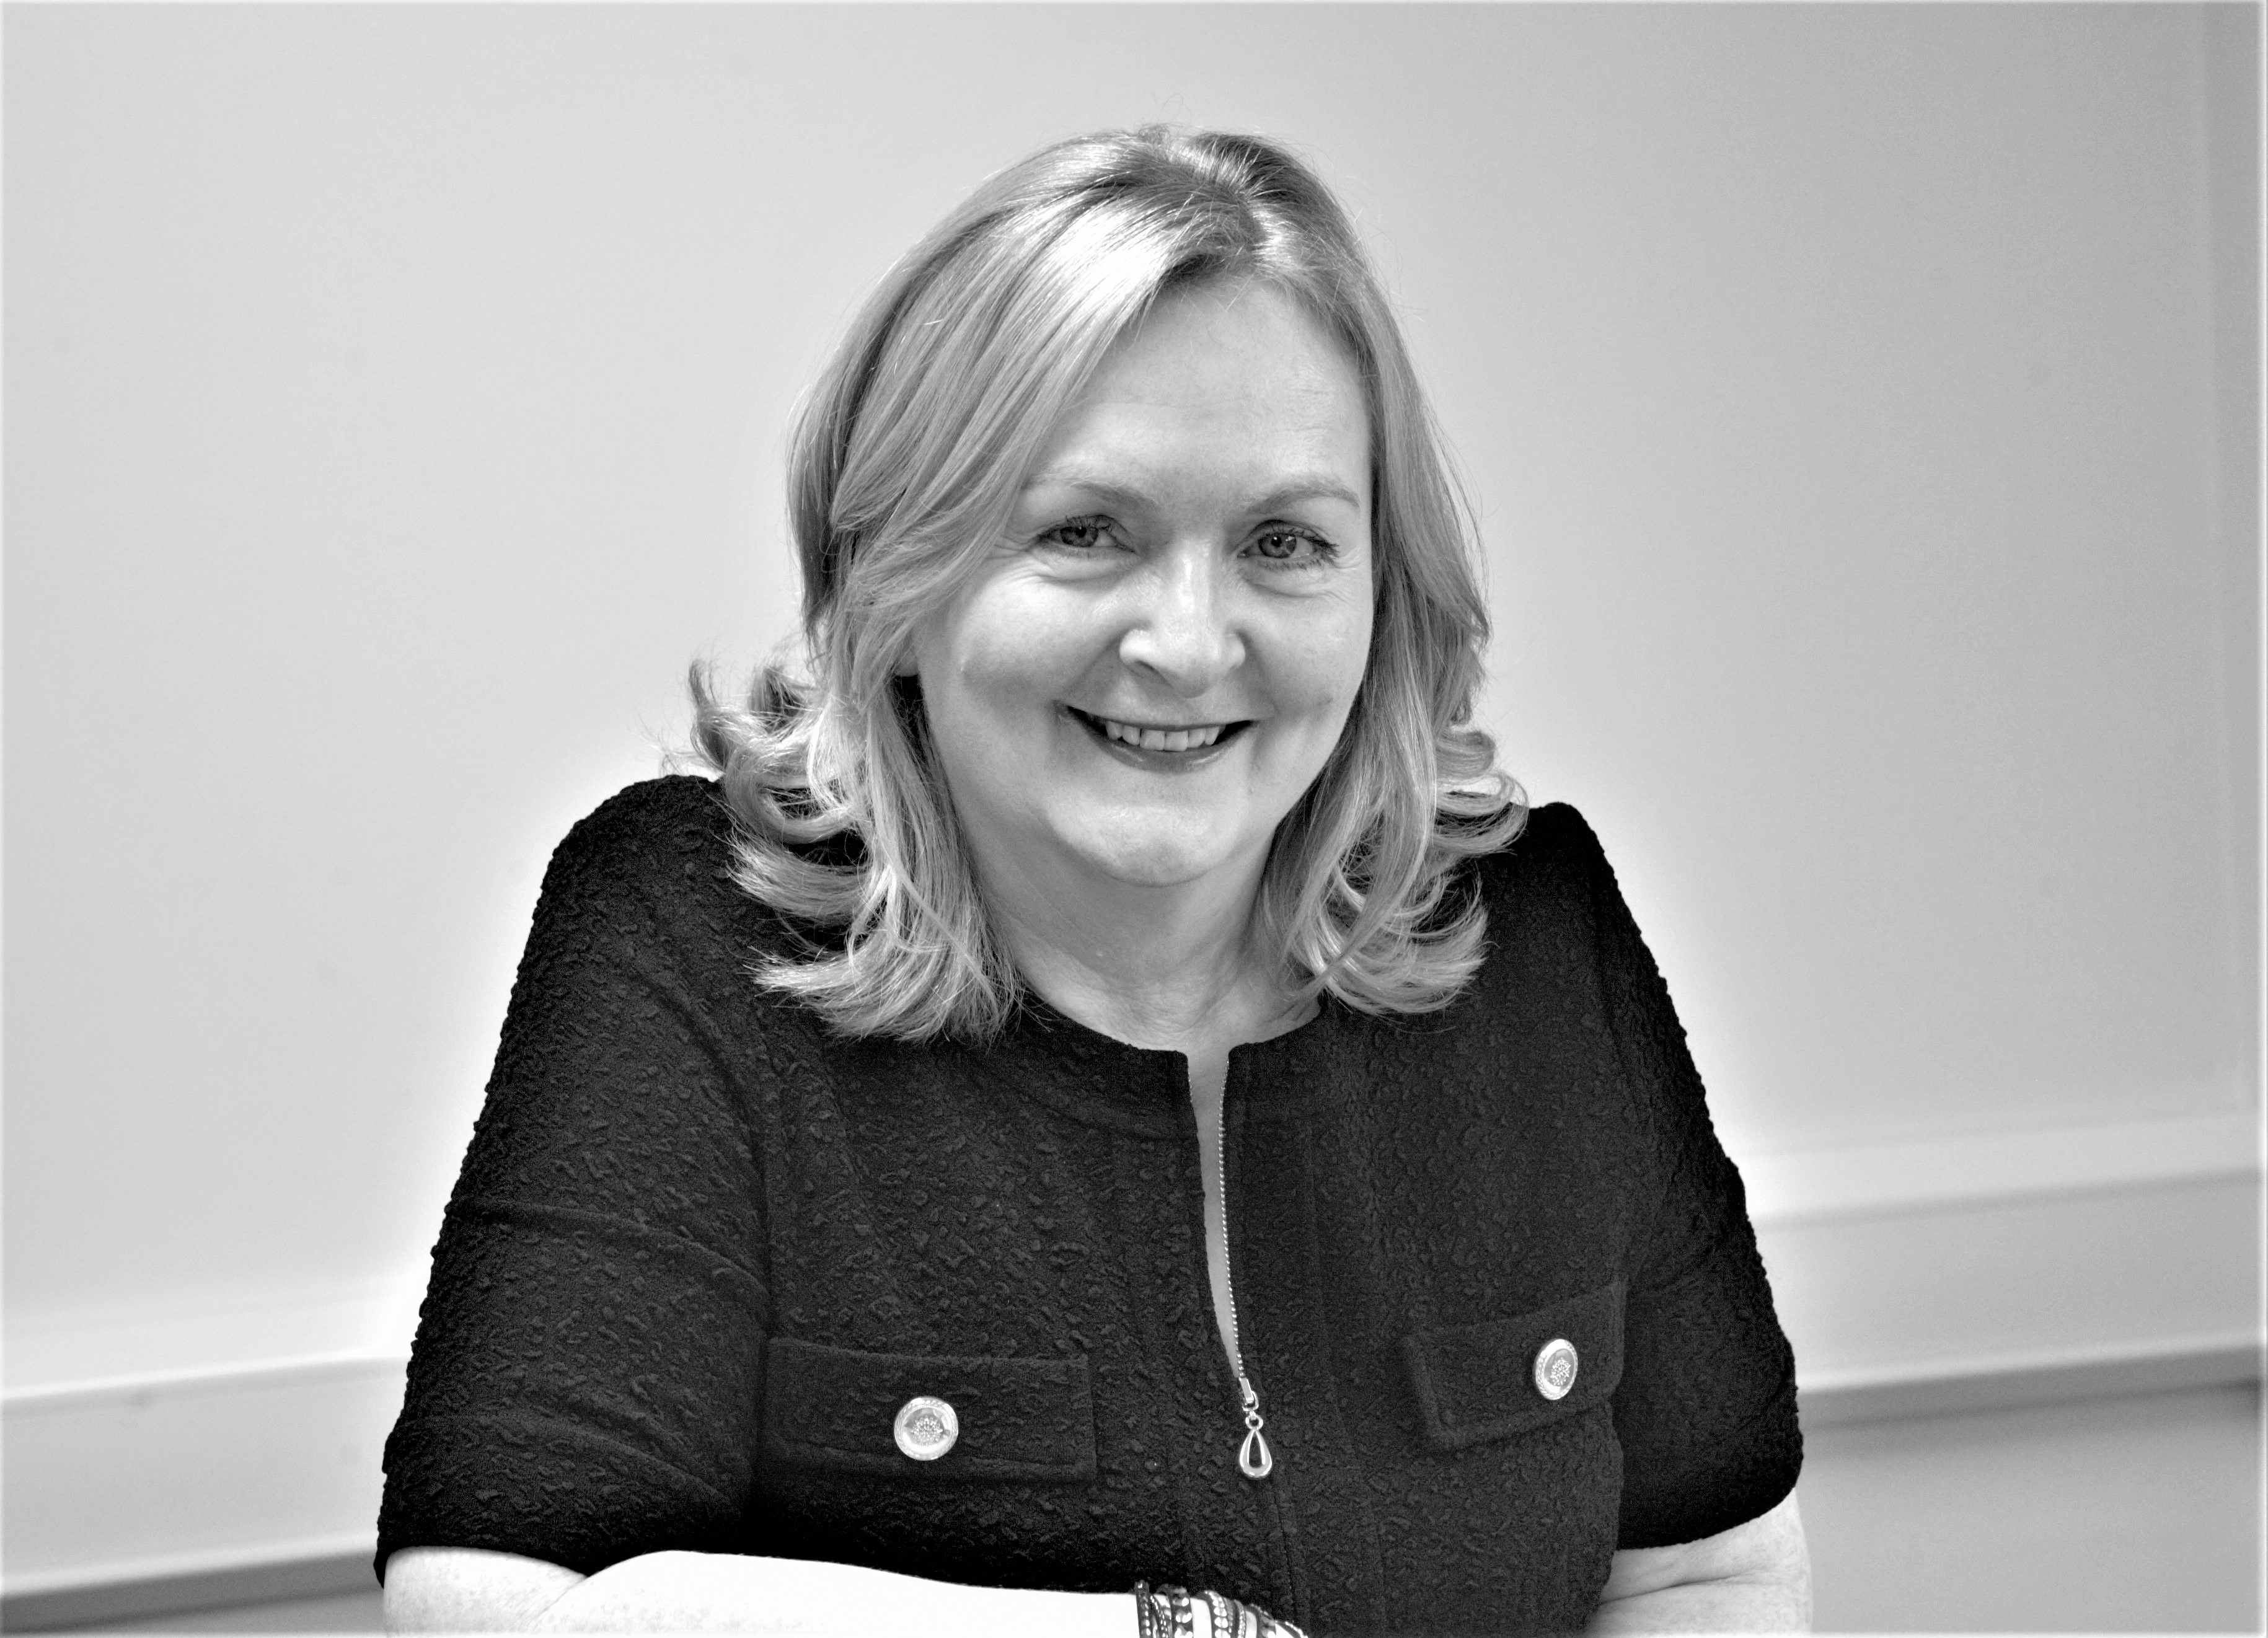 Salon business expert Liz McKeon launches a new international coaching programme